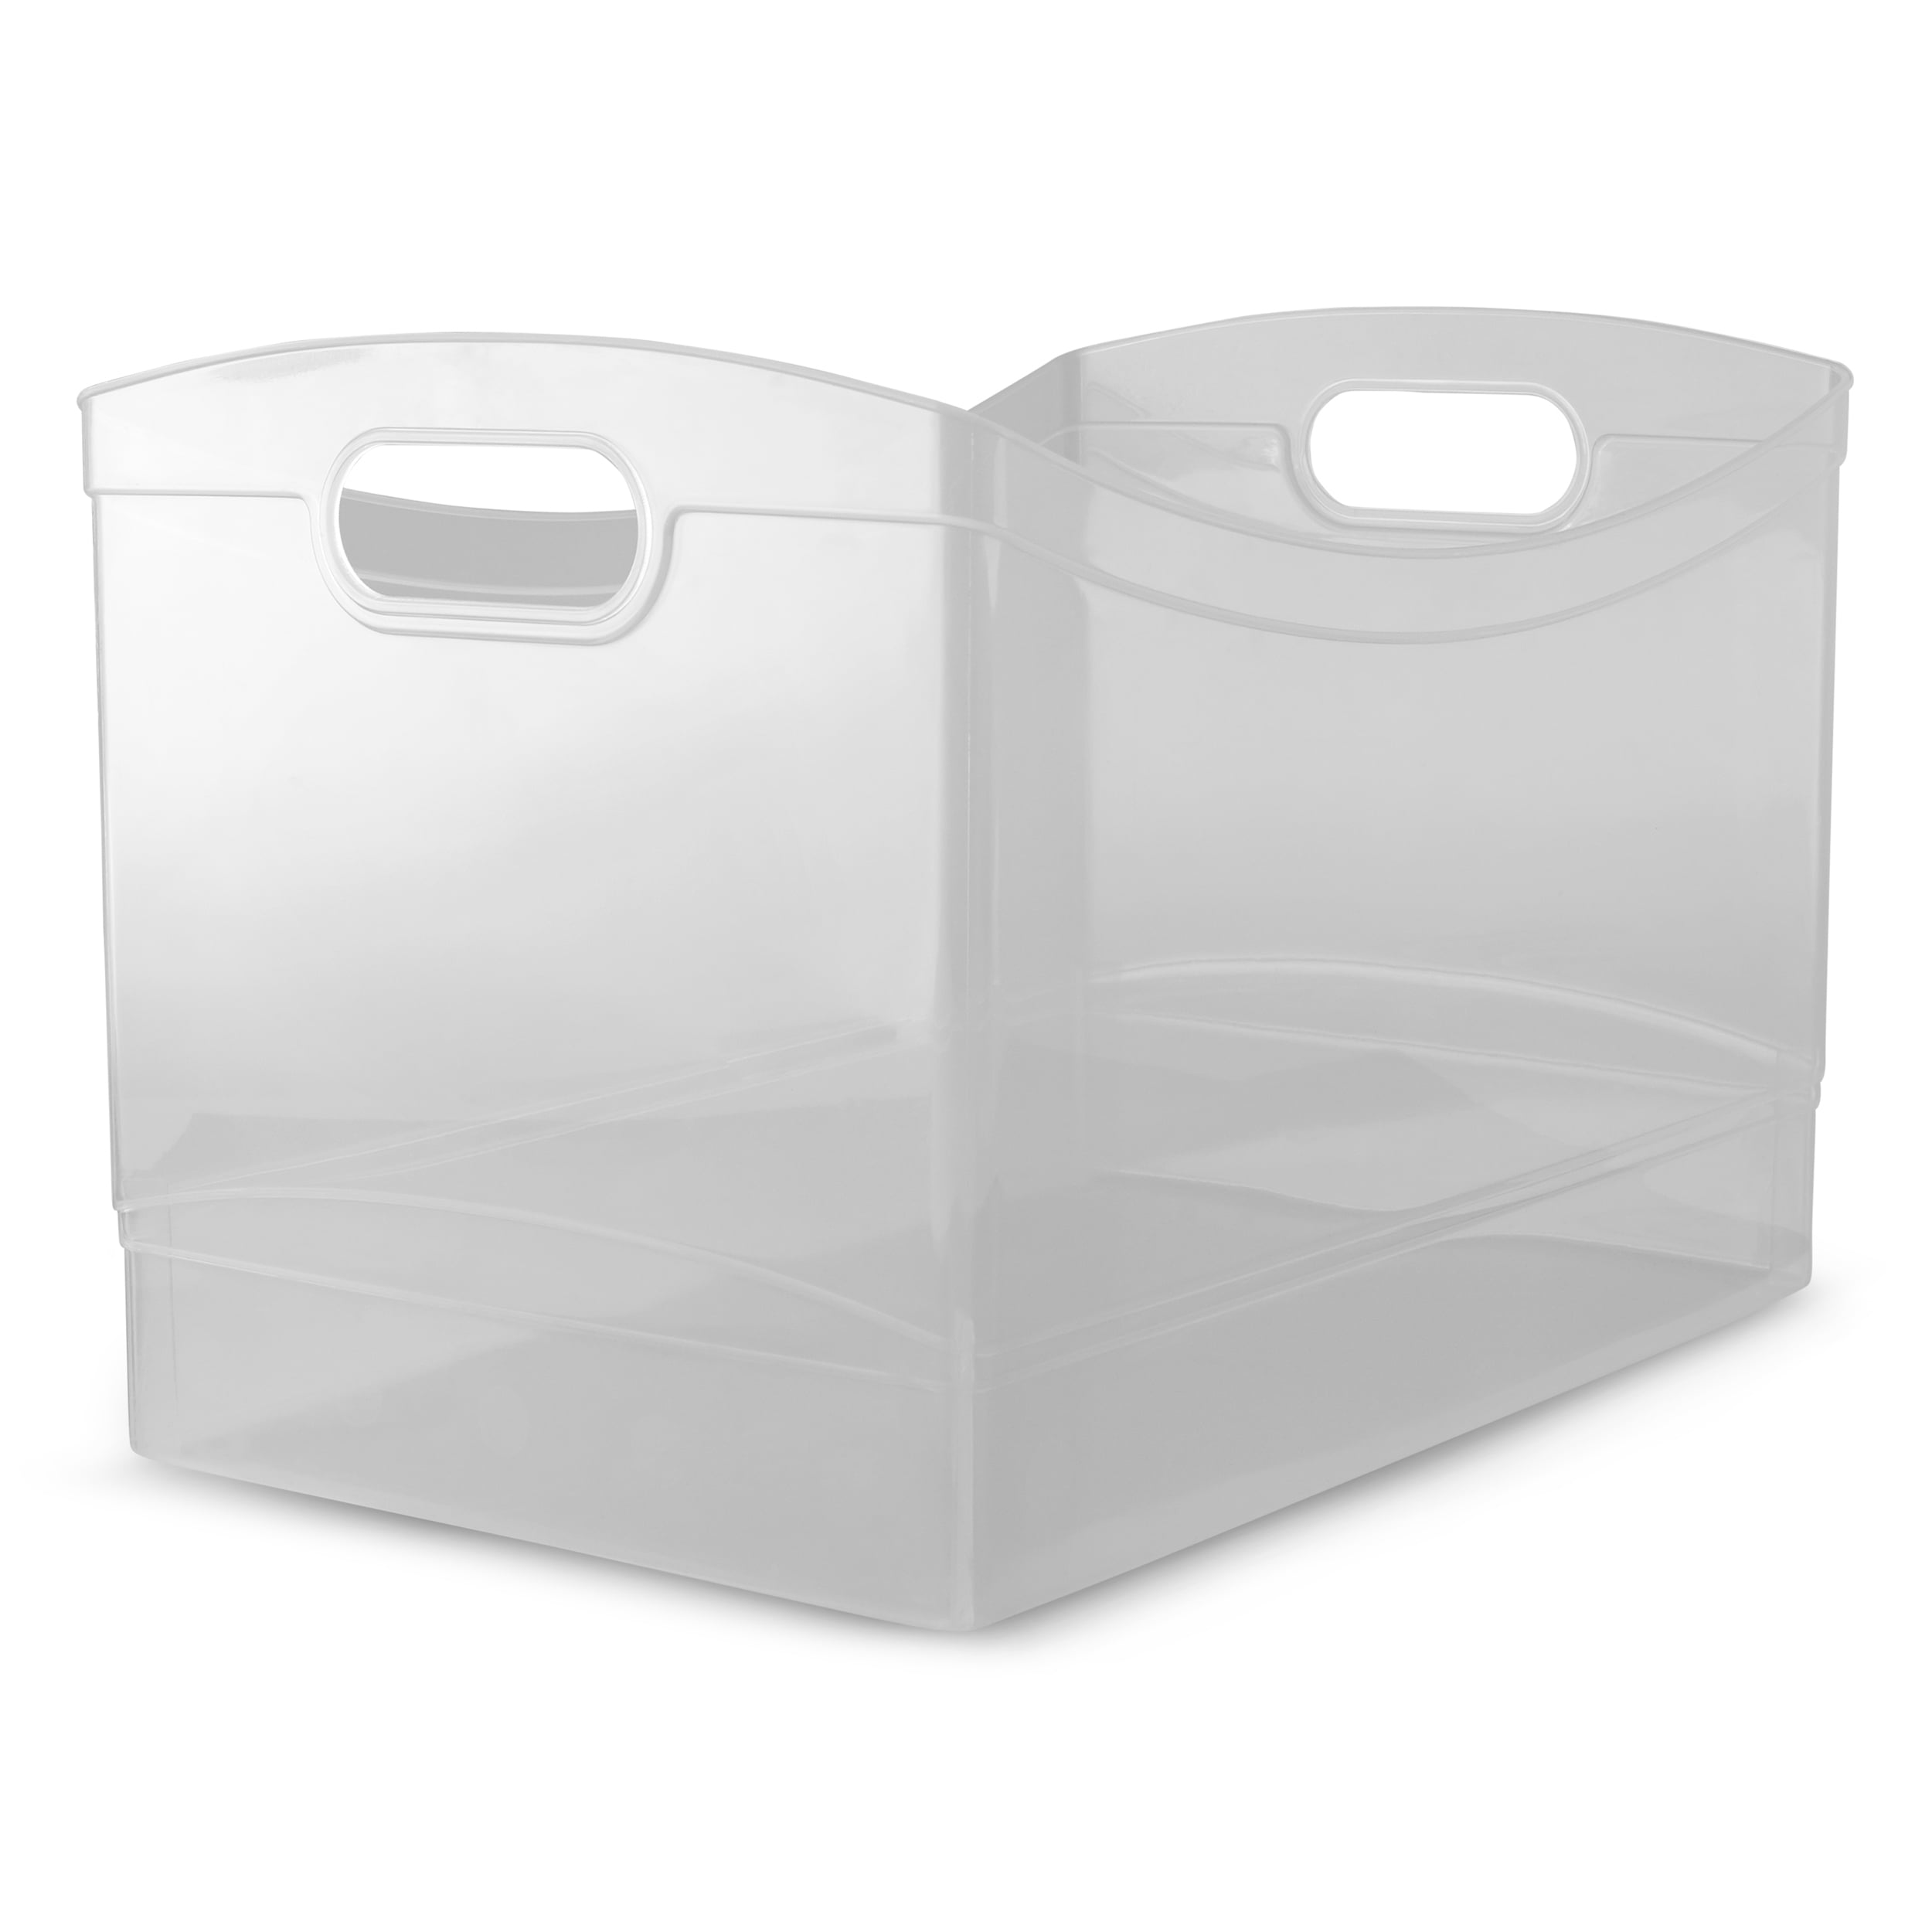 Mainstays Plastic Utility Storage Organizer Bin, Clear, 15 x 10 x 9.5